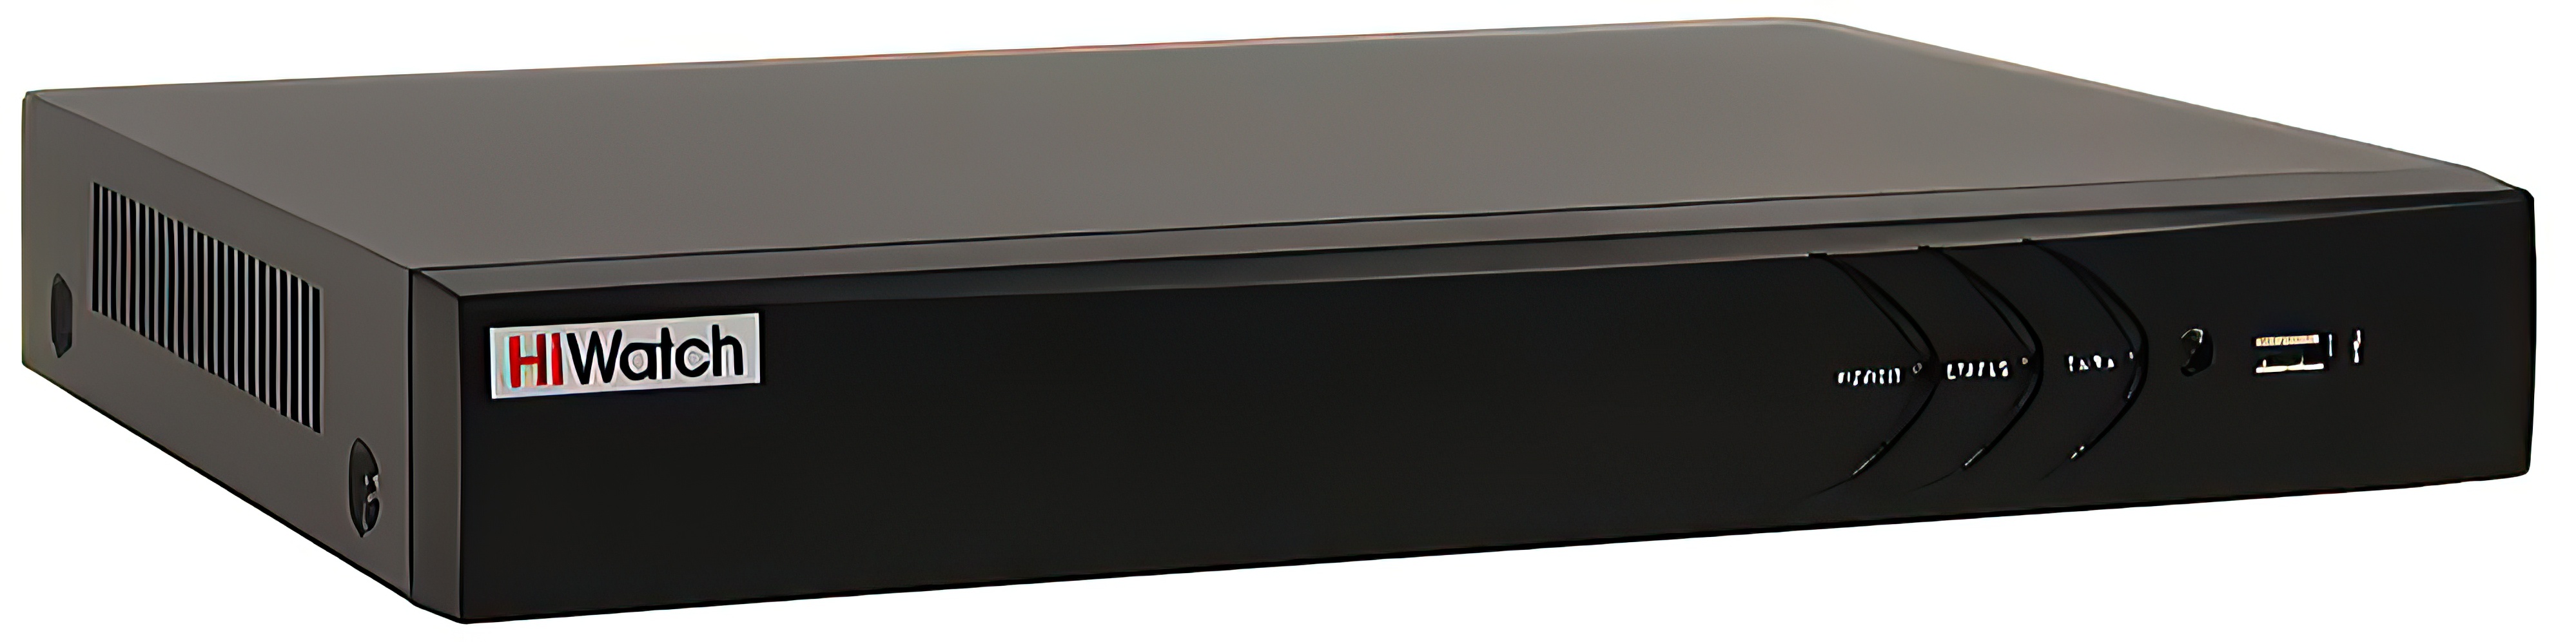 8-канальный гибридный HD-TVI видеорегистратор HiWatch DS-H308QAС гибридный видеорегистратор atix at hvr 1108a